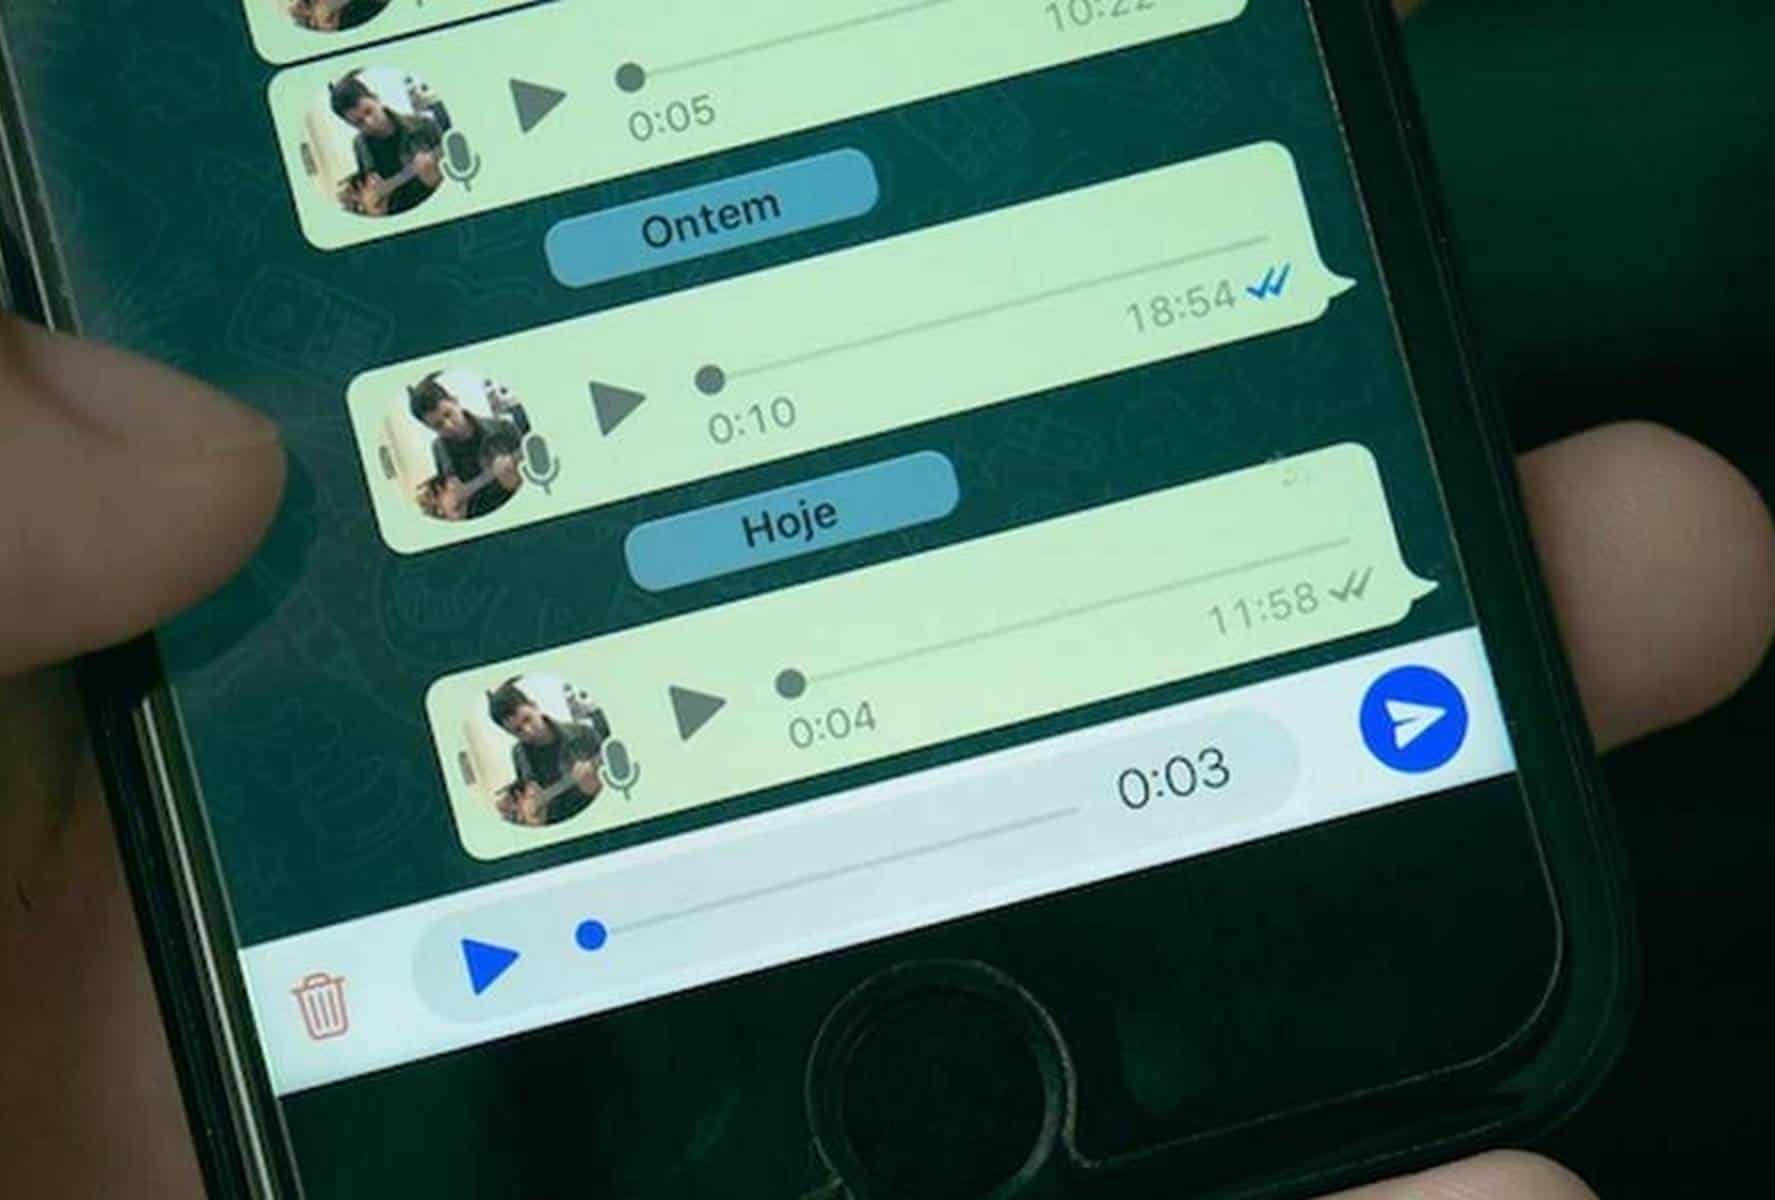 WhatsApp: como ouvir notas de voz sem ninguém saber?